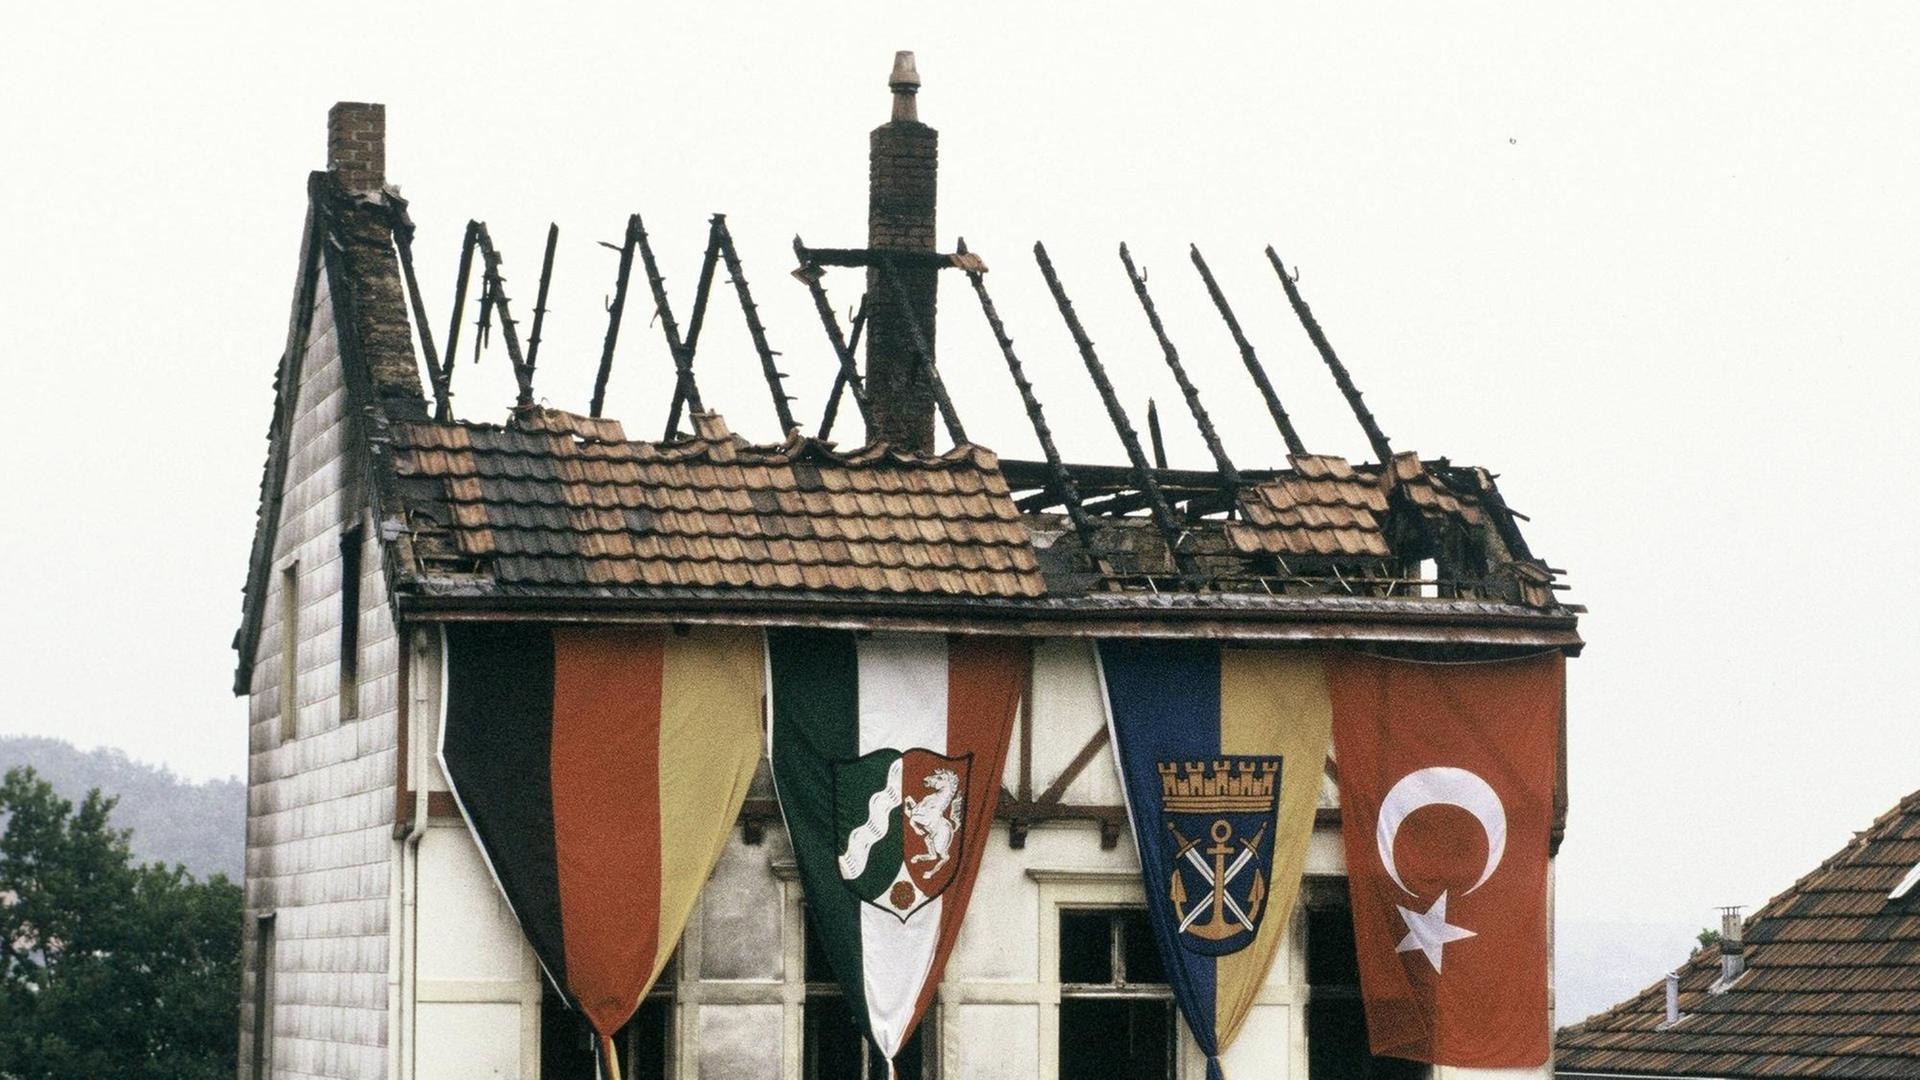 Ein durch ein Feuer stark beschädigtes Haus in Solingen. An der äußeren Fassade hängen mehrere Flaggen, darunter die türkische.